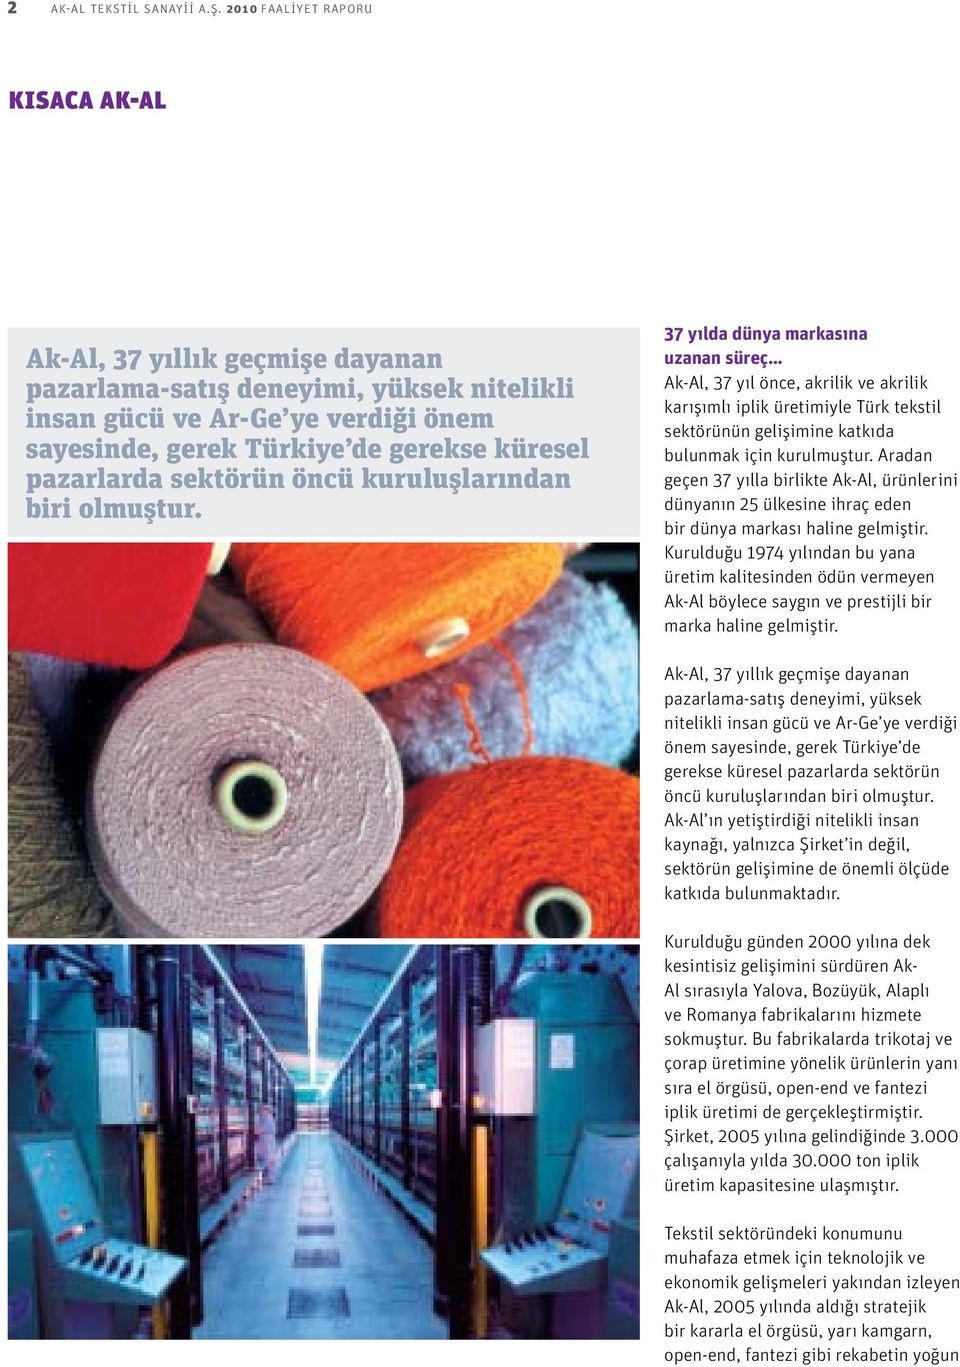 37 yılda dünya markasına uzanan süreç Ak-Al, 37 yıl önce, akrilik ve akrilik karışımlı iplik üretimiyle Türk tekstil sektörünün gelişimine katkıda bulunmak için kurulmuştur.